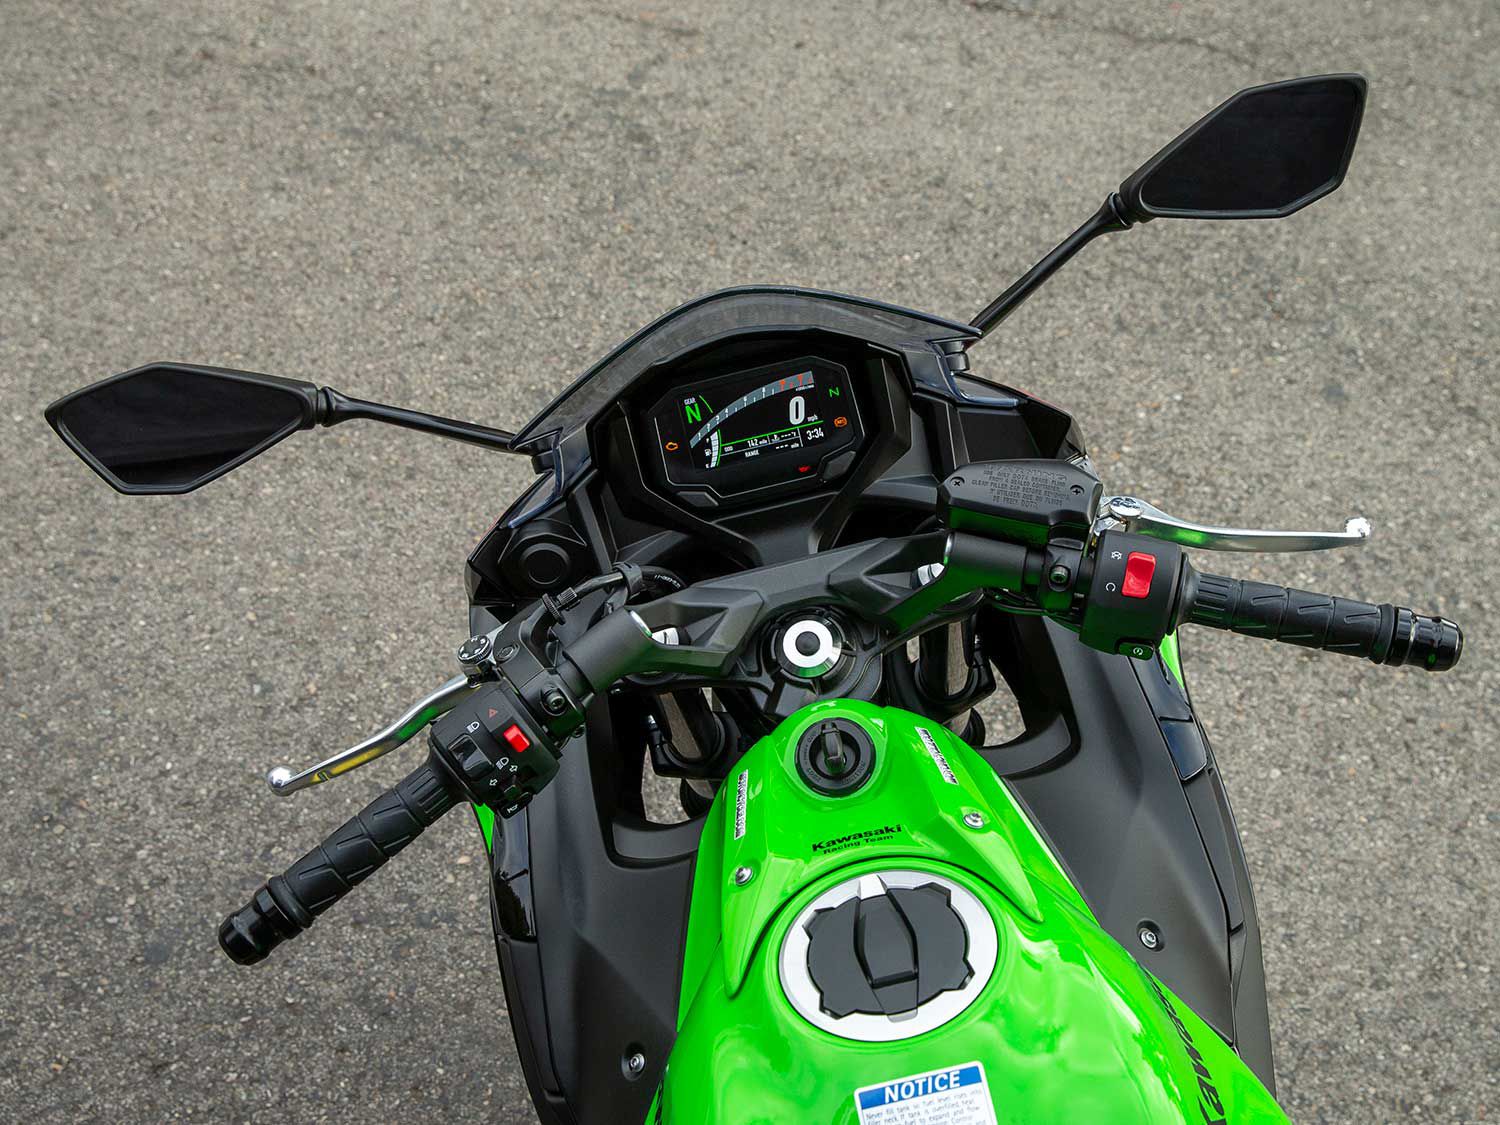 2020 Kawasaki Ninja 650 First Ride | World